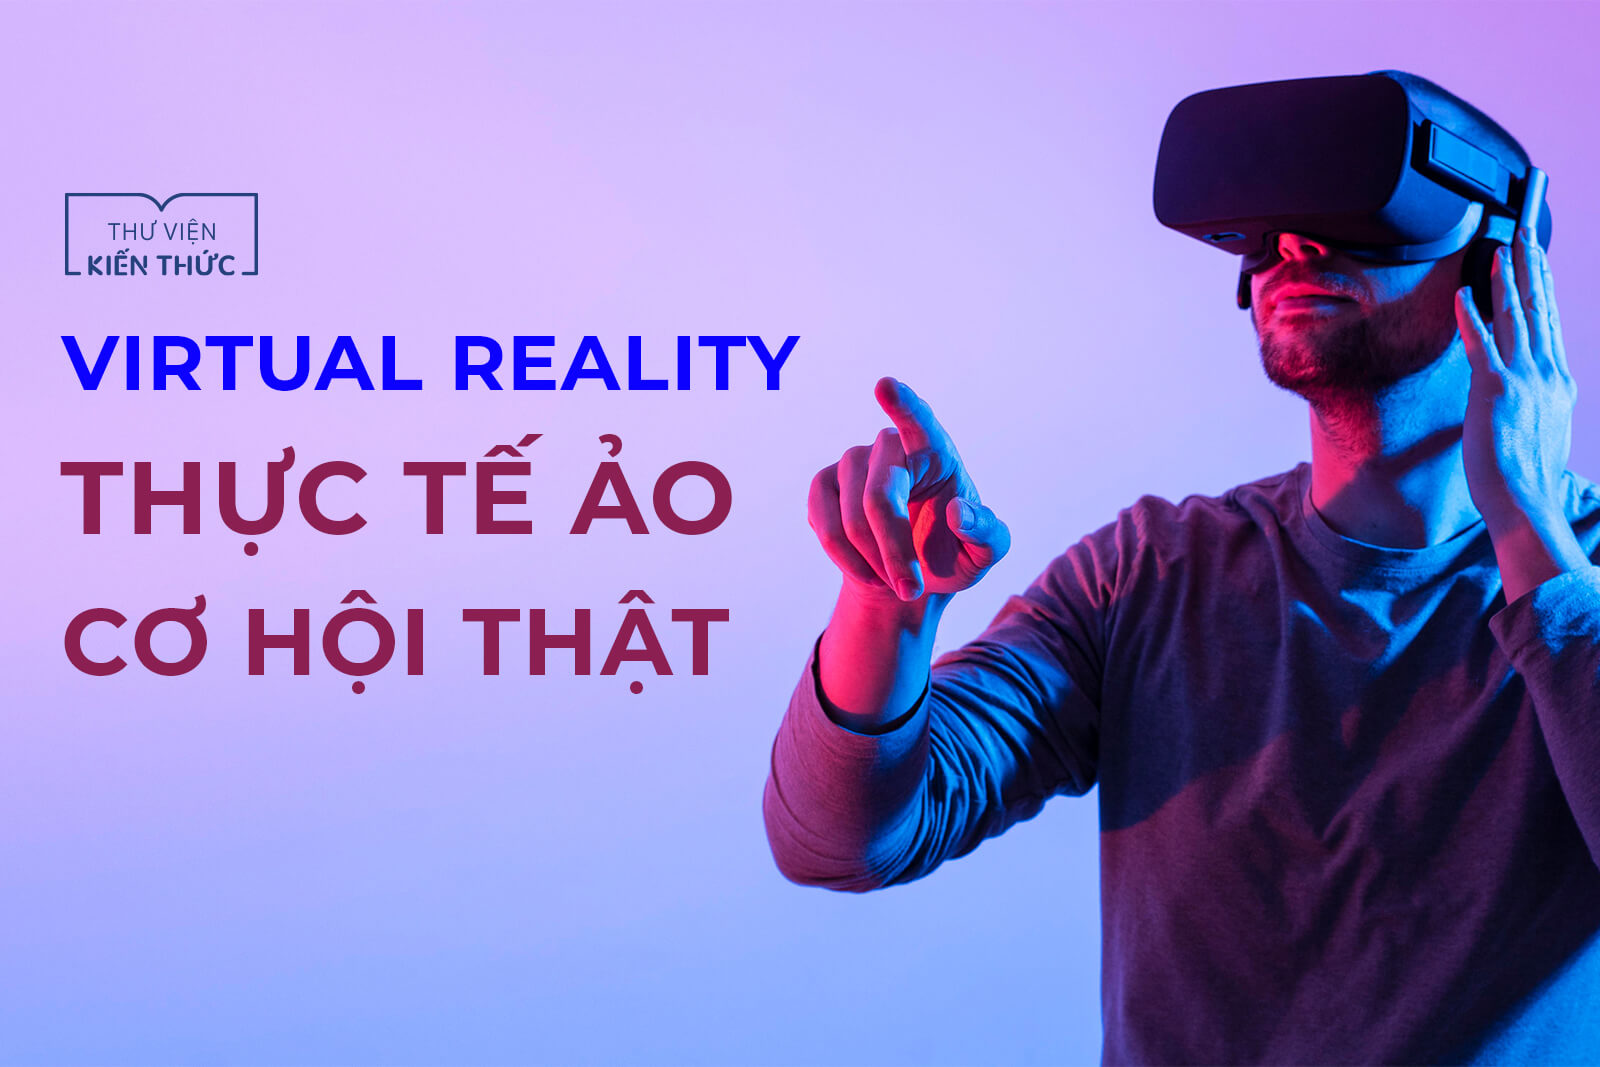 Virtual Reality: Thực tế ảo - Cơ hội thật